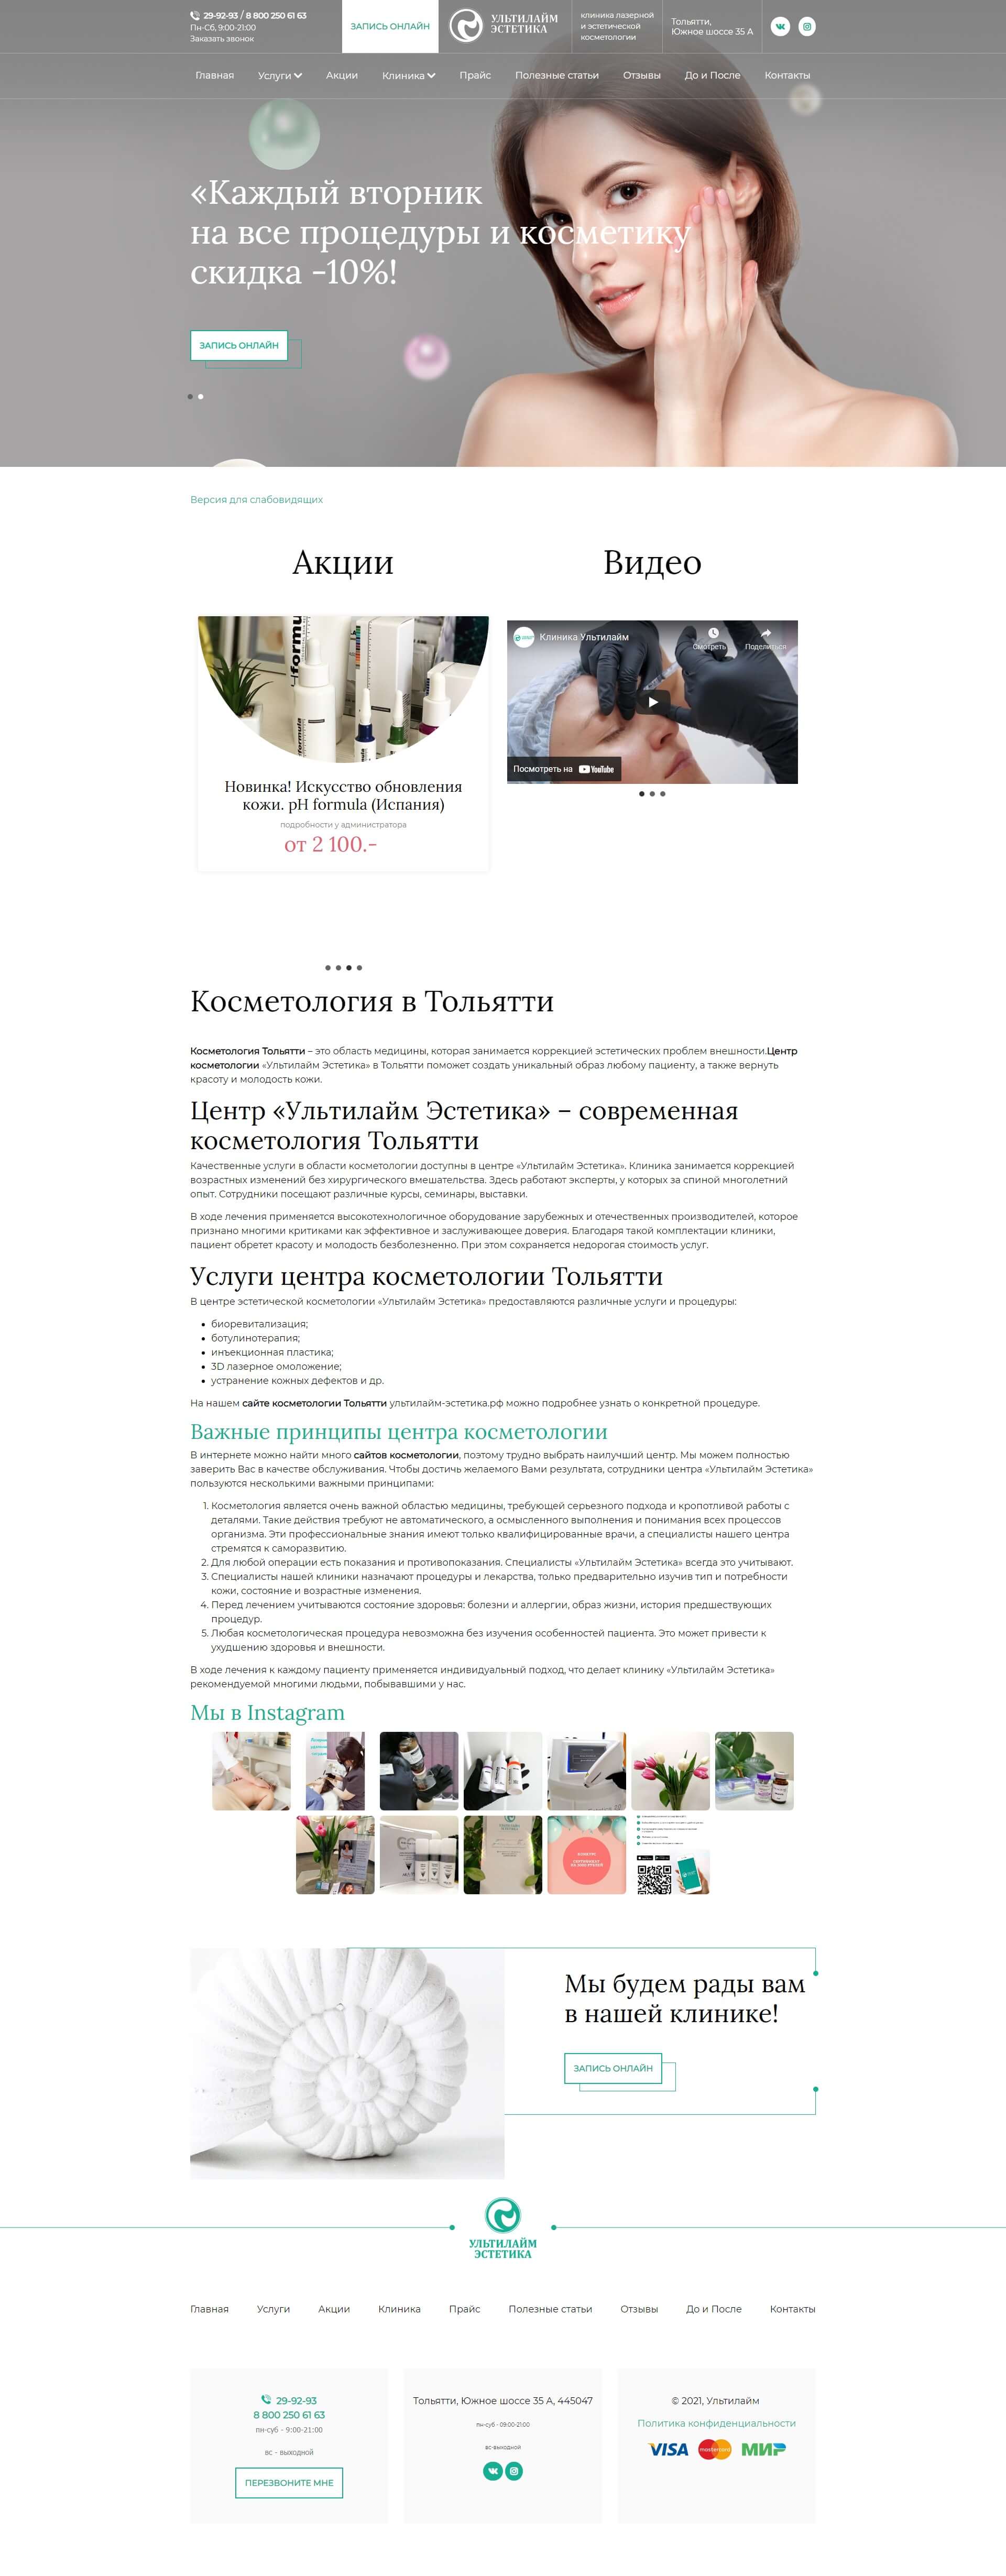 Кейс РостСайт - Москва: создание сайта ультилайм-эстетика.рф